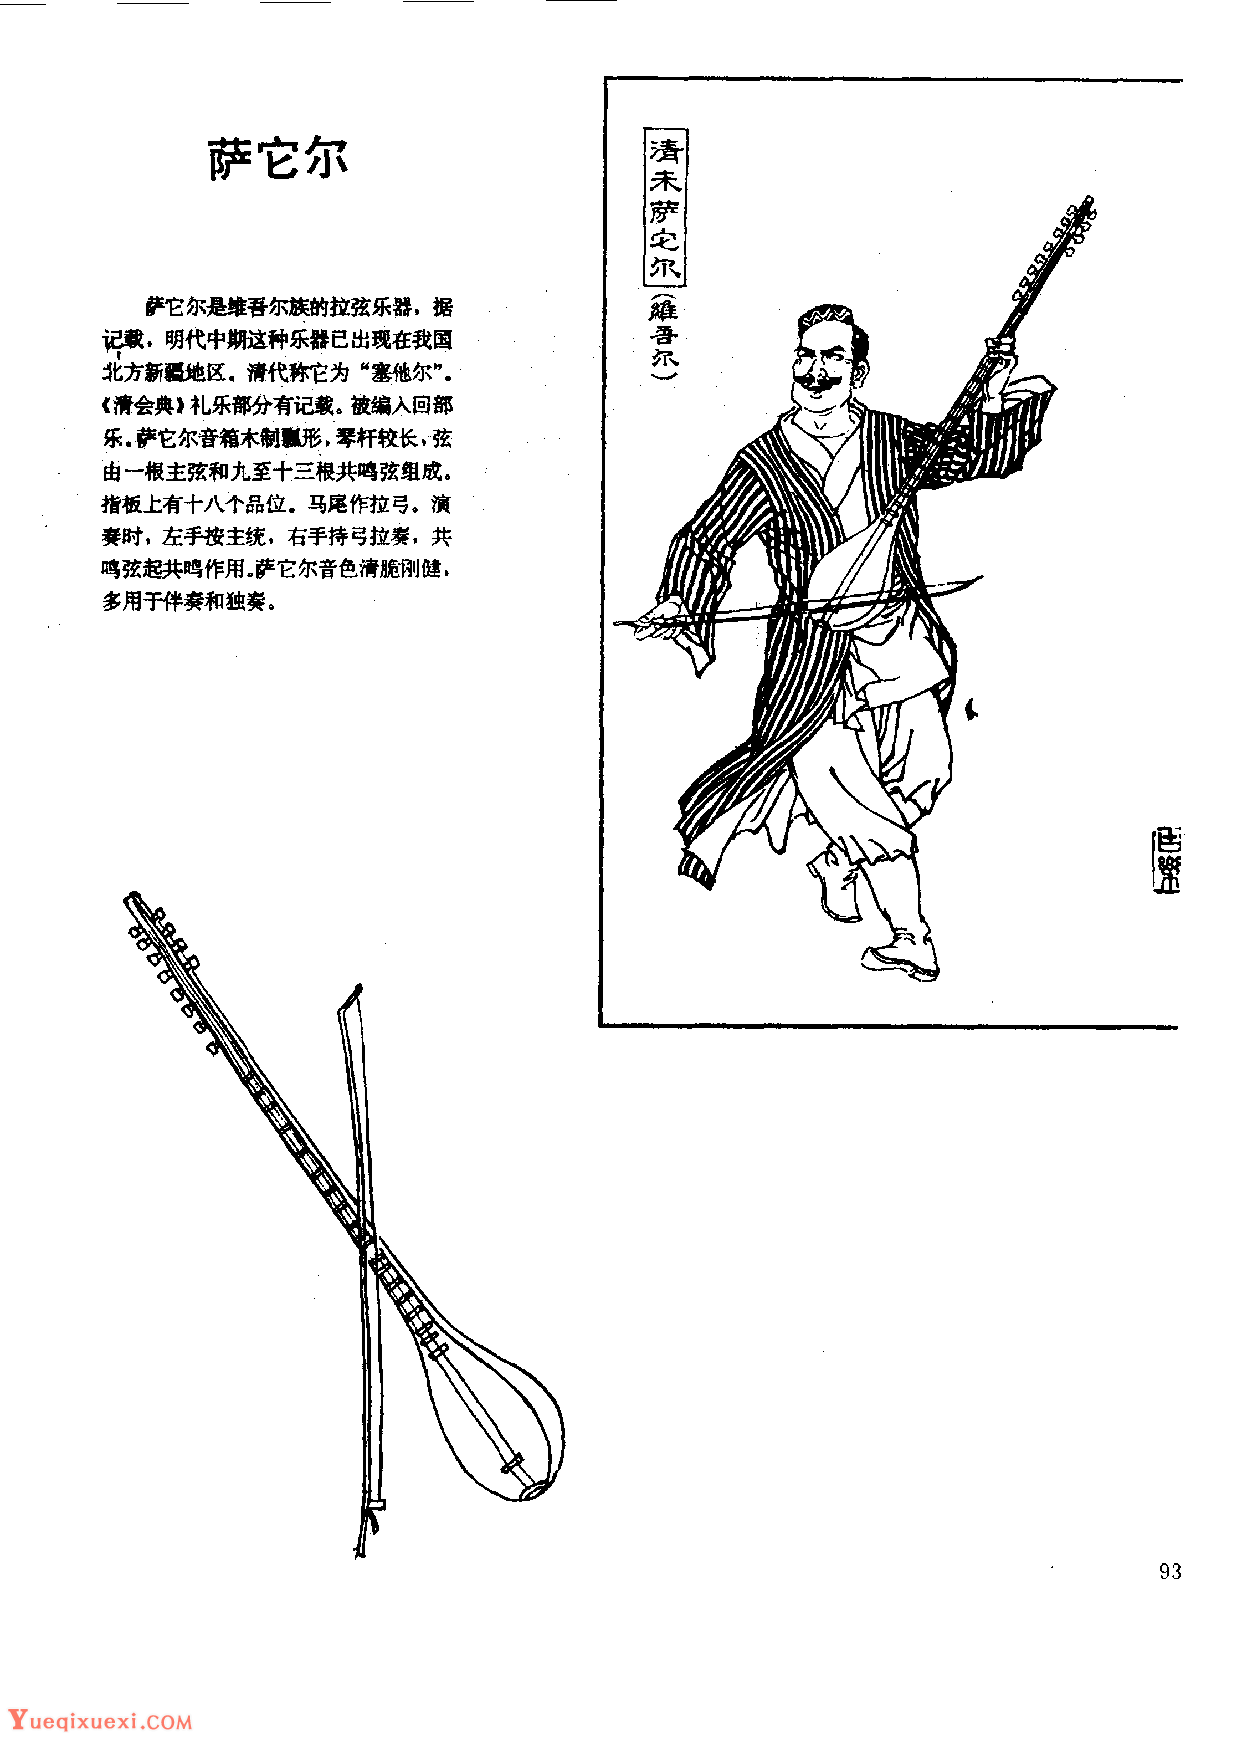 中国古代乐器《萨它尔》